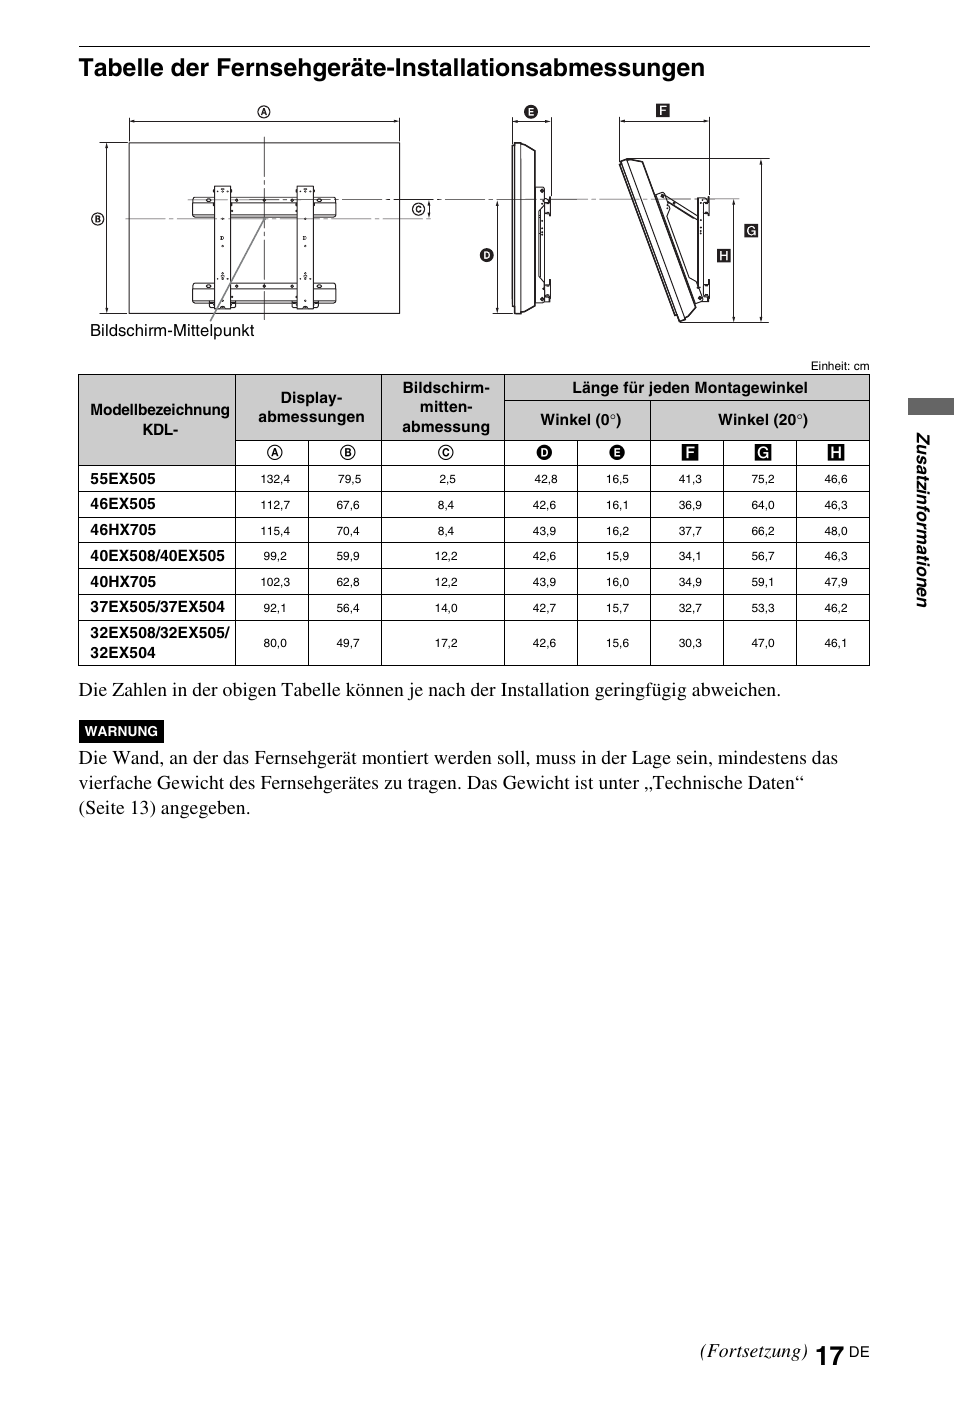 Tabelle der fernsehgeräte-installationsabmessungen, Fortsetzung), Zus atz inform a tio n en | Sony KDL-32EX508 Benutzerhandbuch | Seite 17 / 122